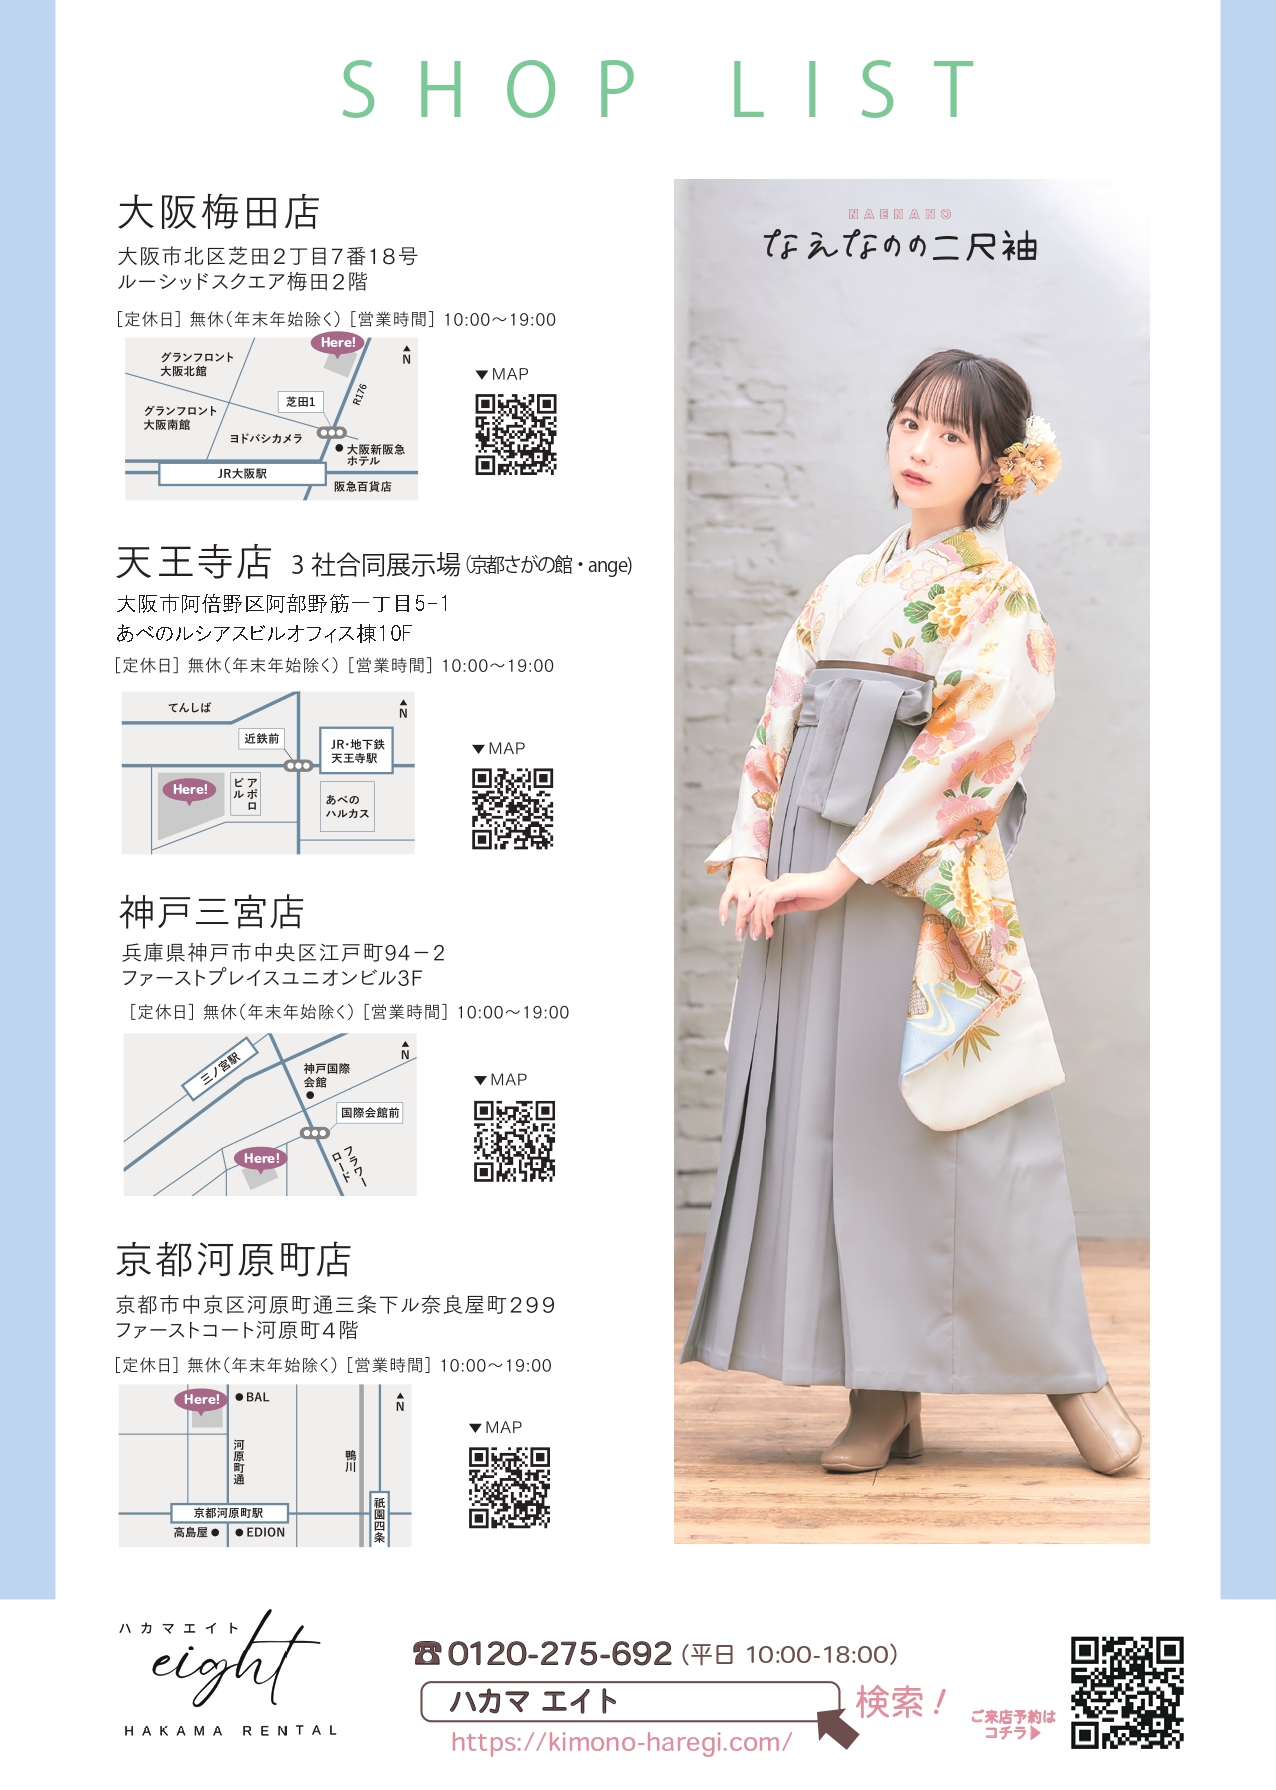 奈良県立大学の卒業式袴レンタルの展示会情報